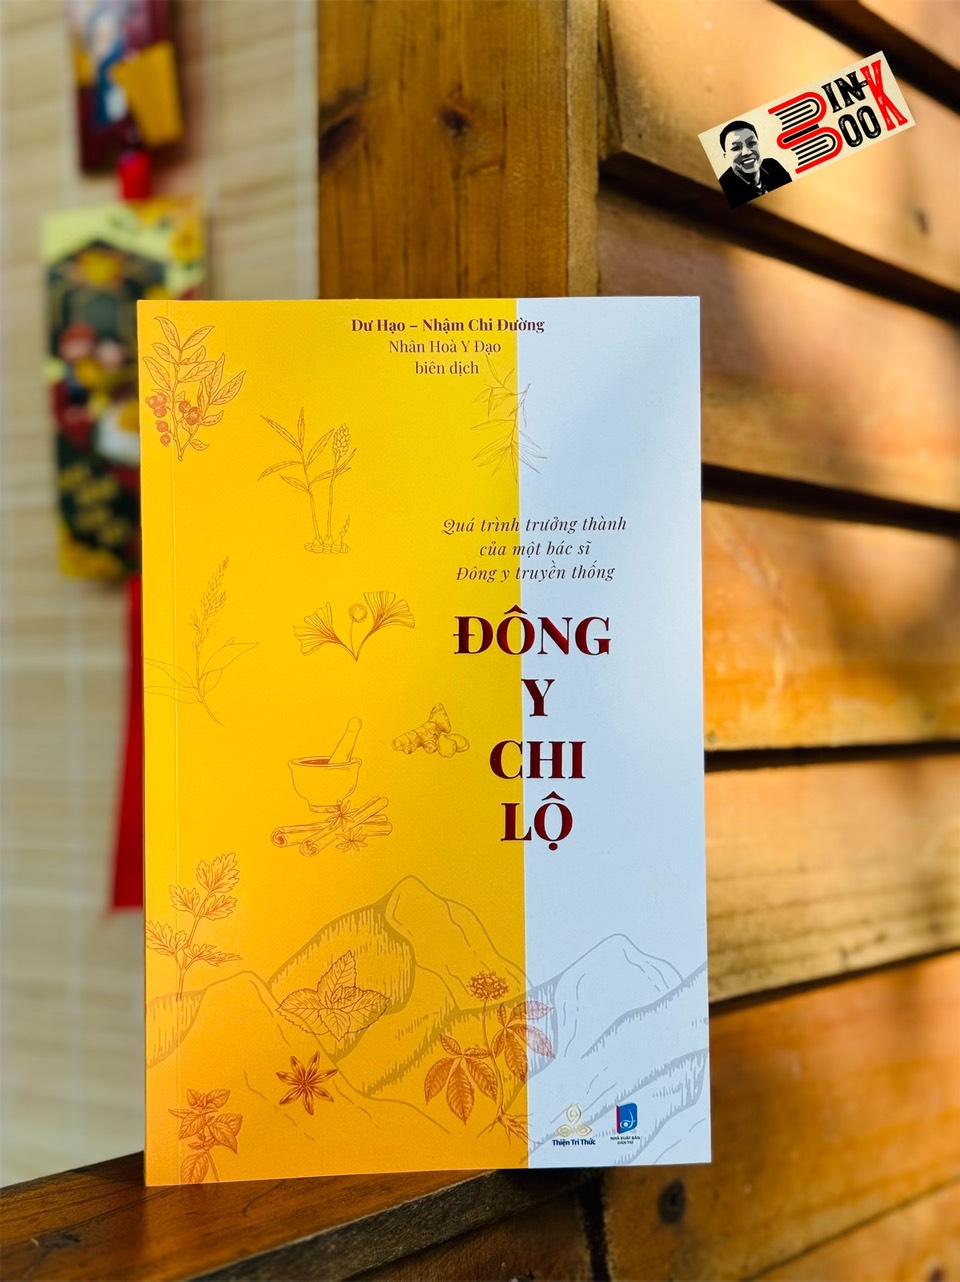 ĐÔNG Y CHI LỘ –Quá trình trưởng thành của một bác sĩ Đông y truyền thống - Dư Hạo – Nhân Hoà Y Đạo dịch – Thiện Tri Thức 